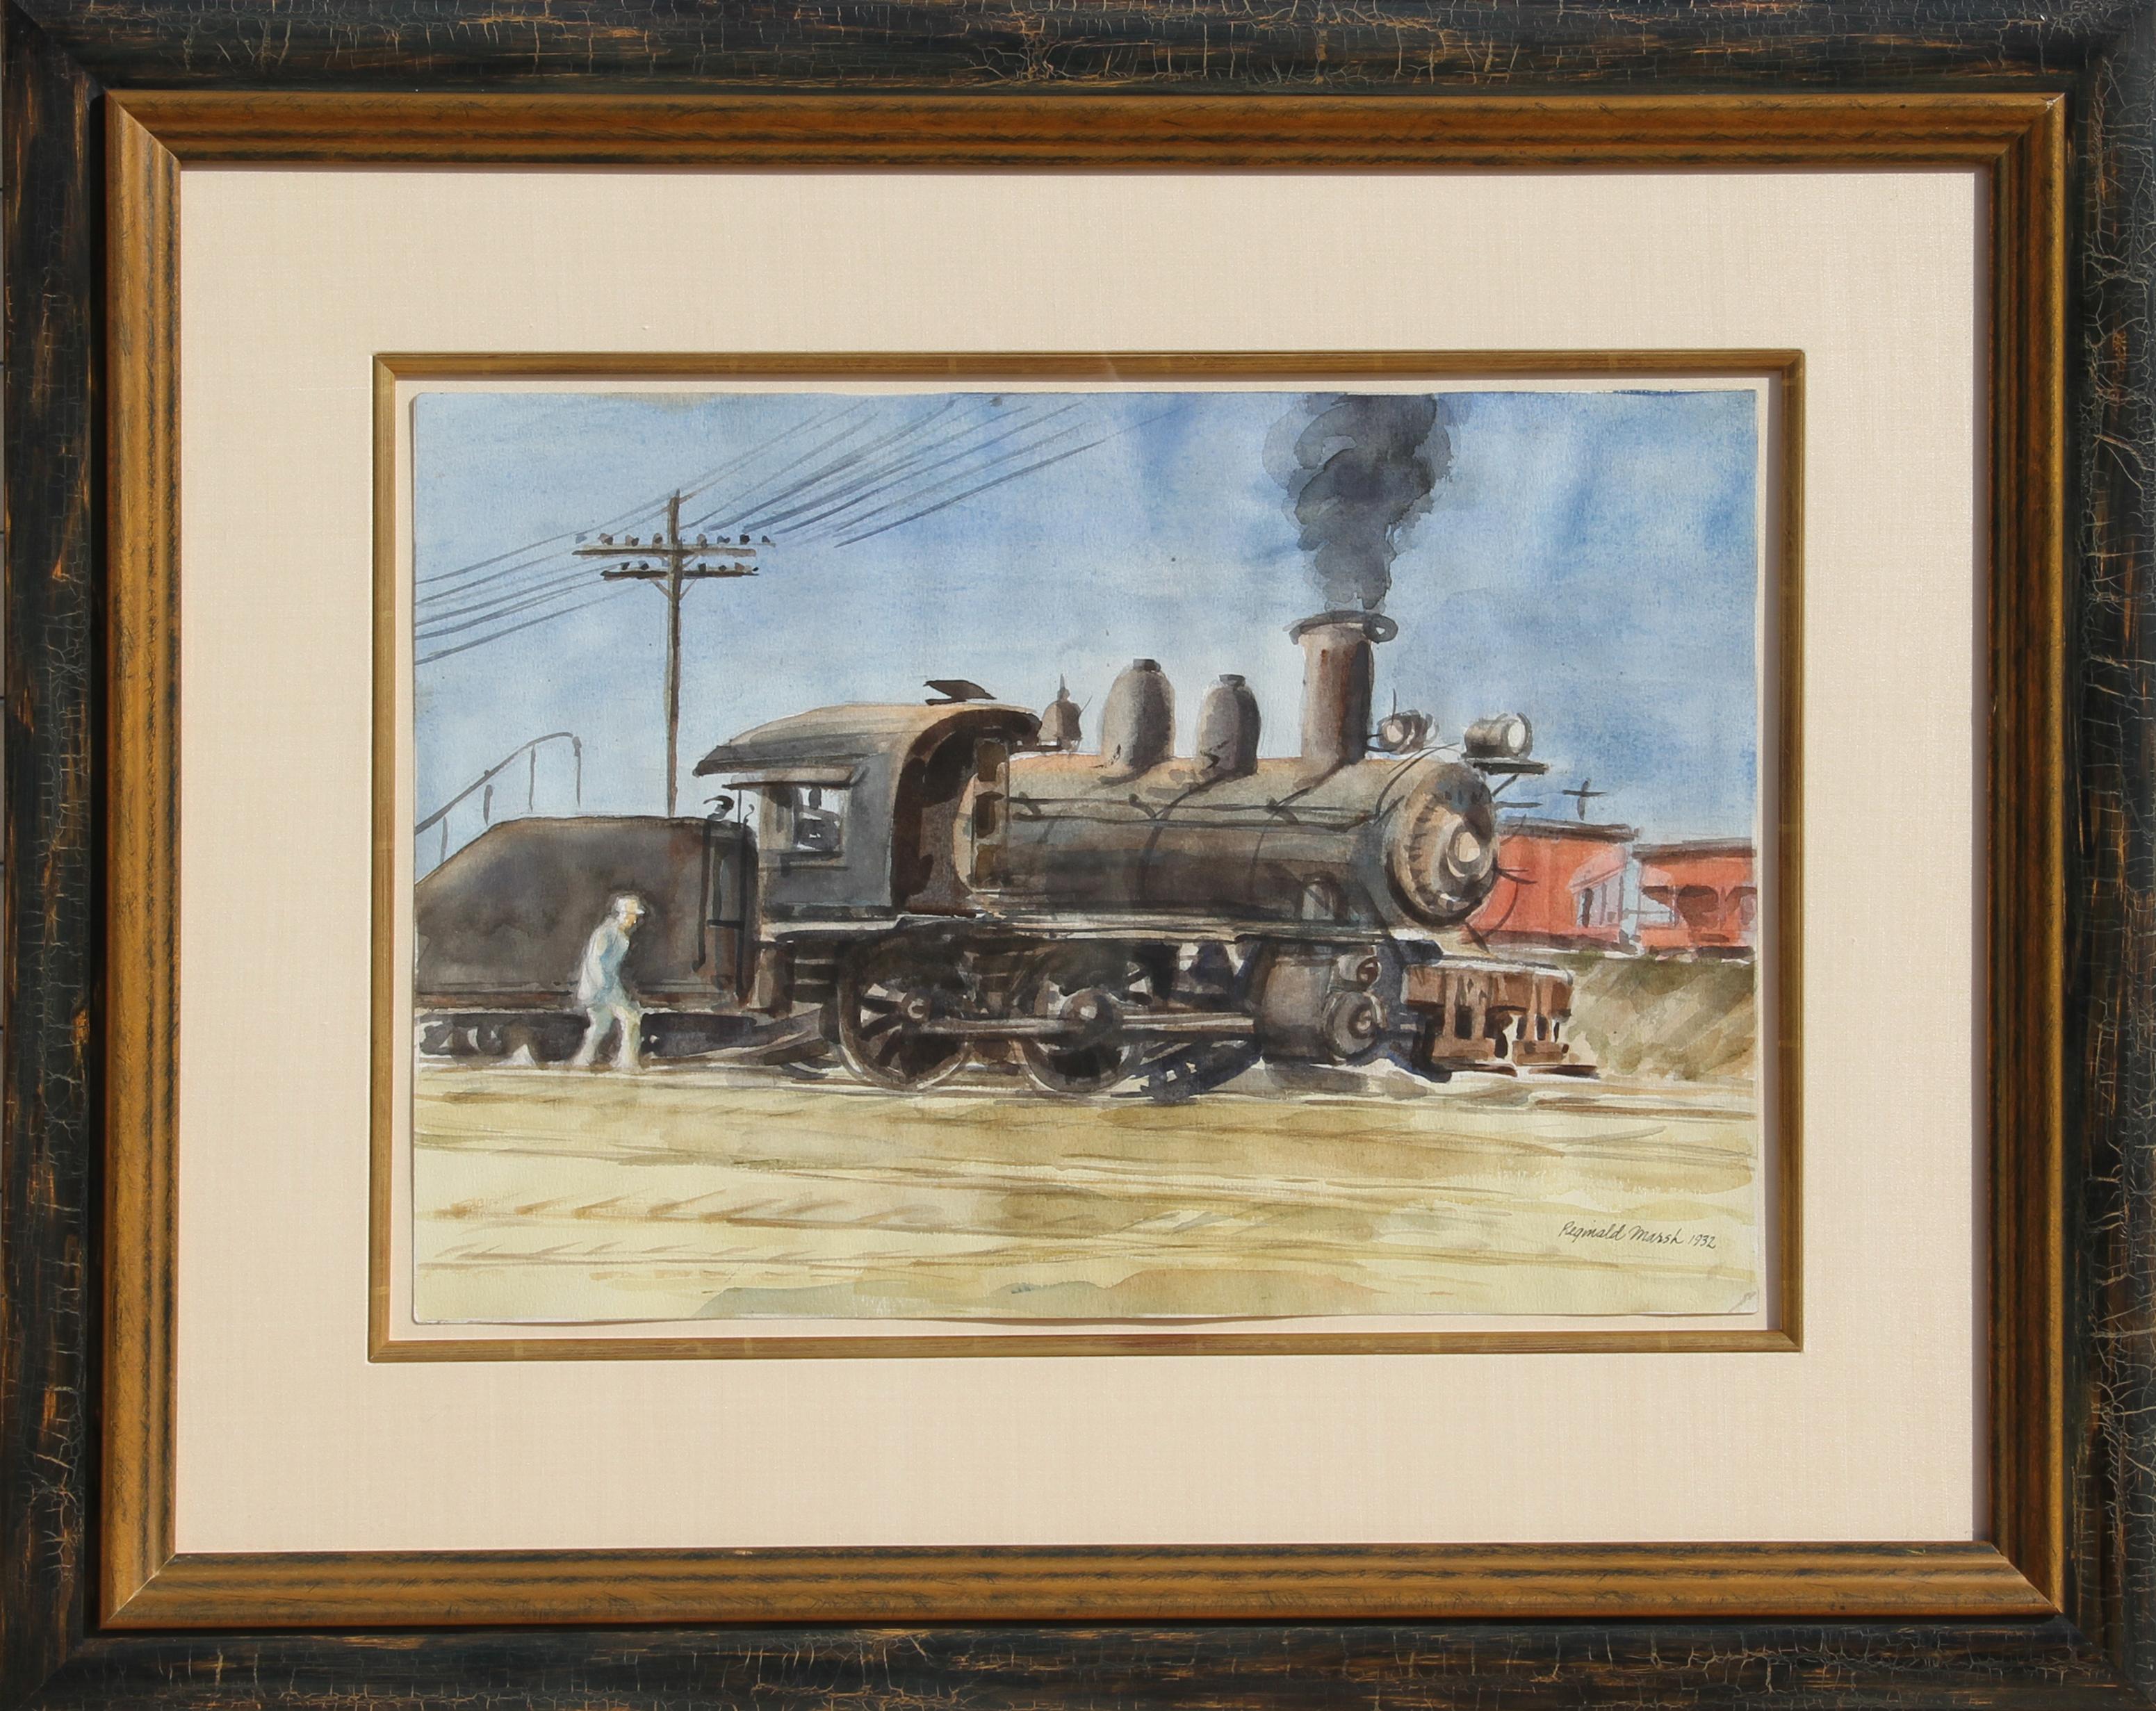 Künstler: Reginald Marsh, Amerikaner (1898 - 1954)
Titel: Lokomotive
Jahr: 1932
Medium: Aquarell auf Papier, signiert und datiert v.l.n.r.
Größe: 14 in. x 20 in. (35,56 cm x 50,8 cm)
Rahmengröße: 26 x 32 Zoll